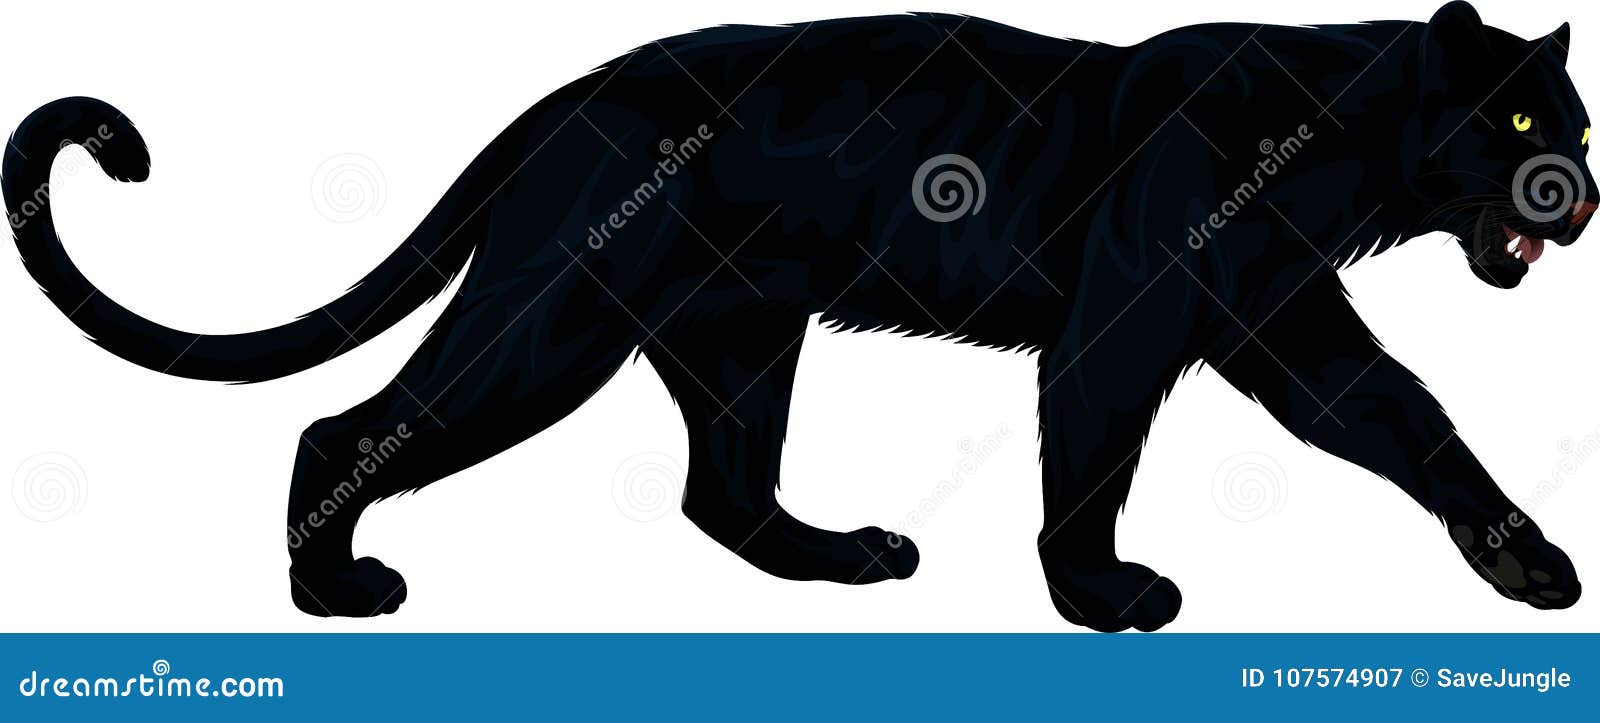  black panther  on white